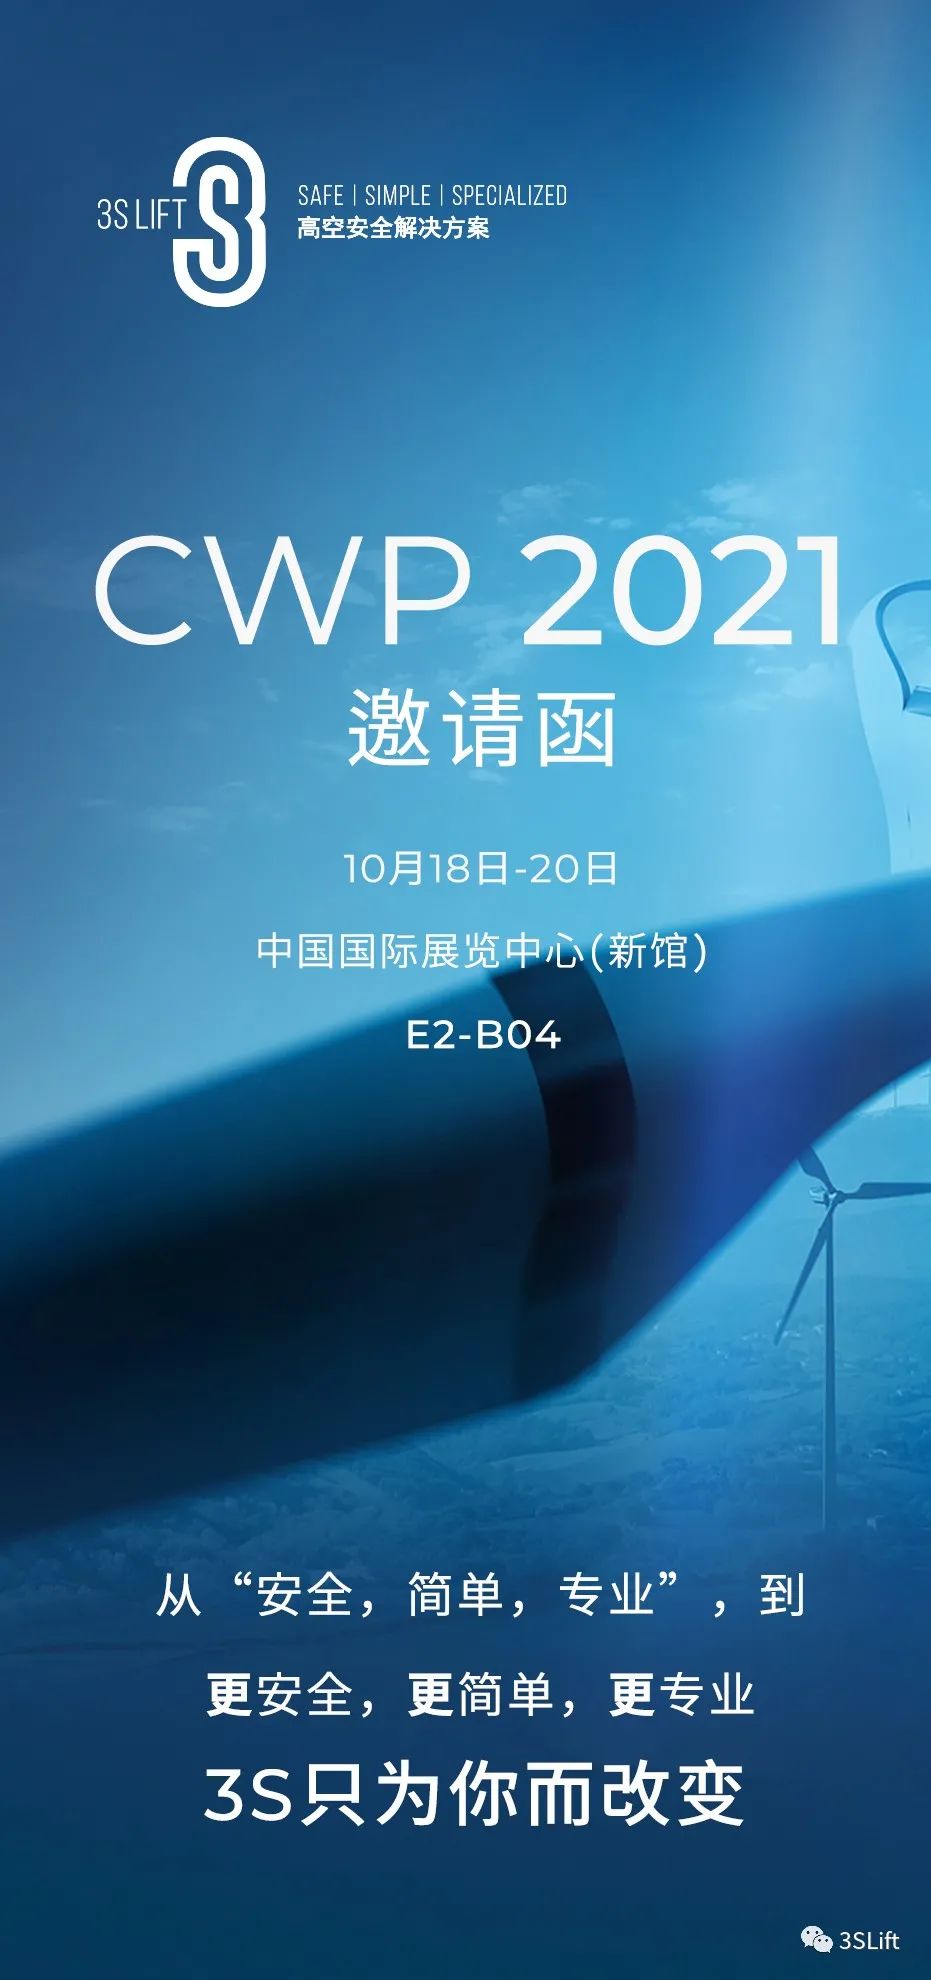 CWP 2021 | 更安全 更简单 更专业――3S Lift与您相约！